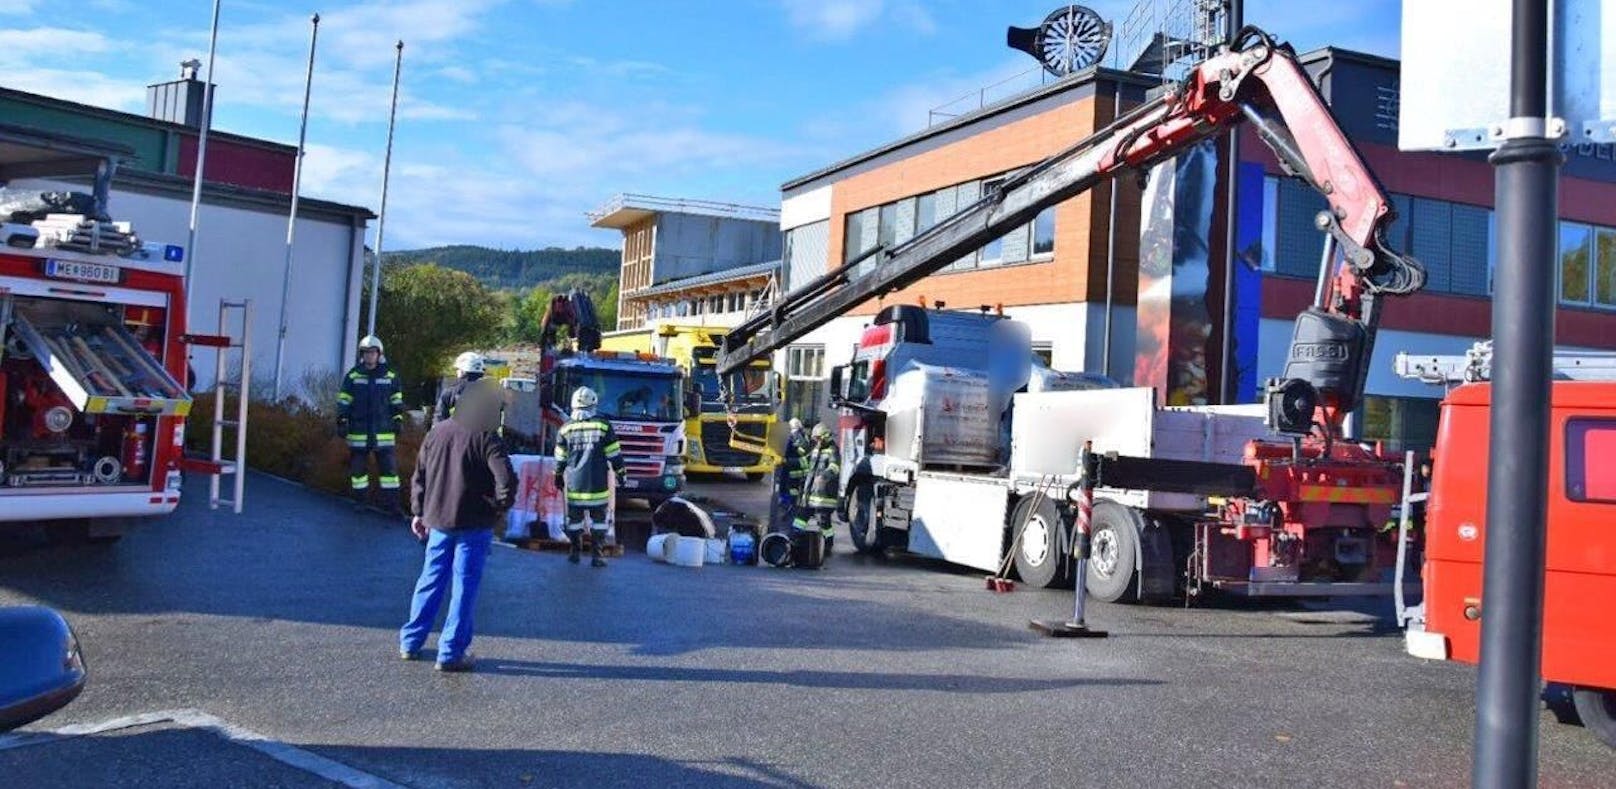 Großalarm: Chemieunfall forderte 6 Feuerwehren